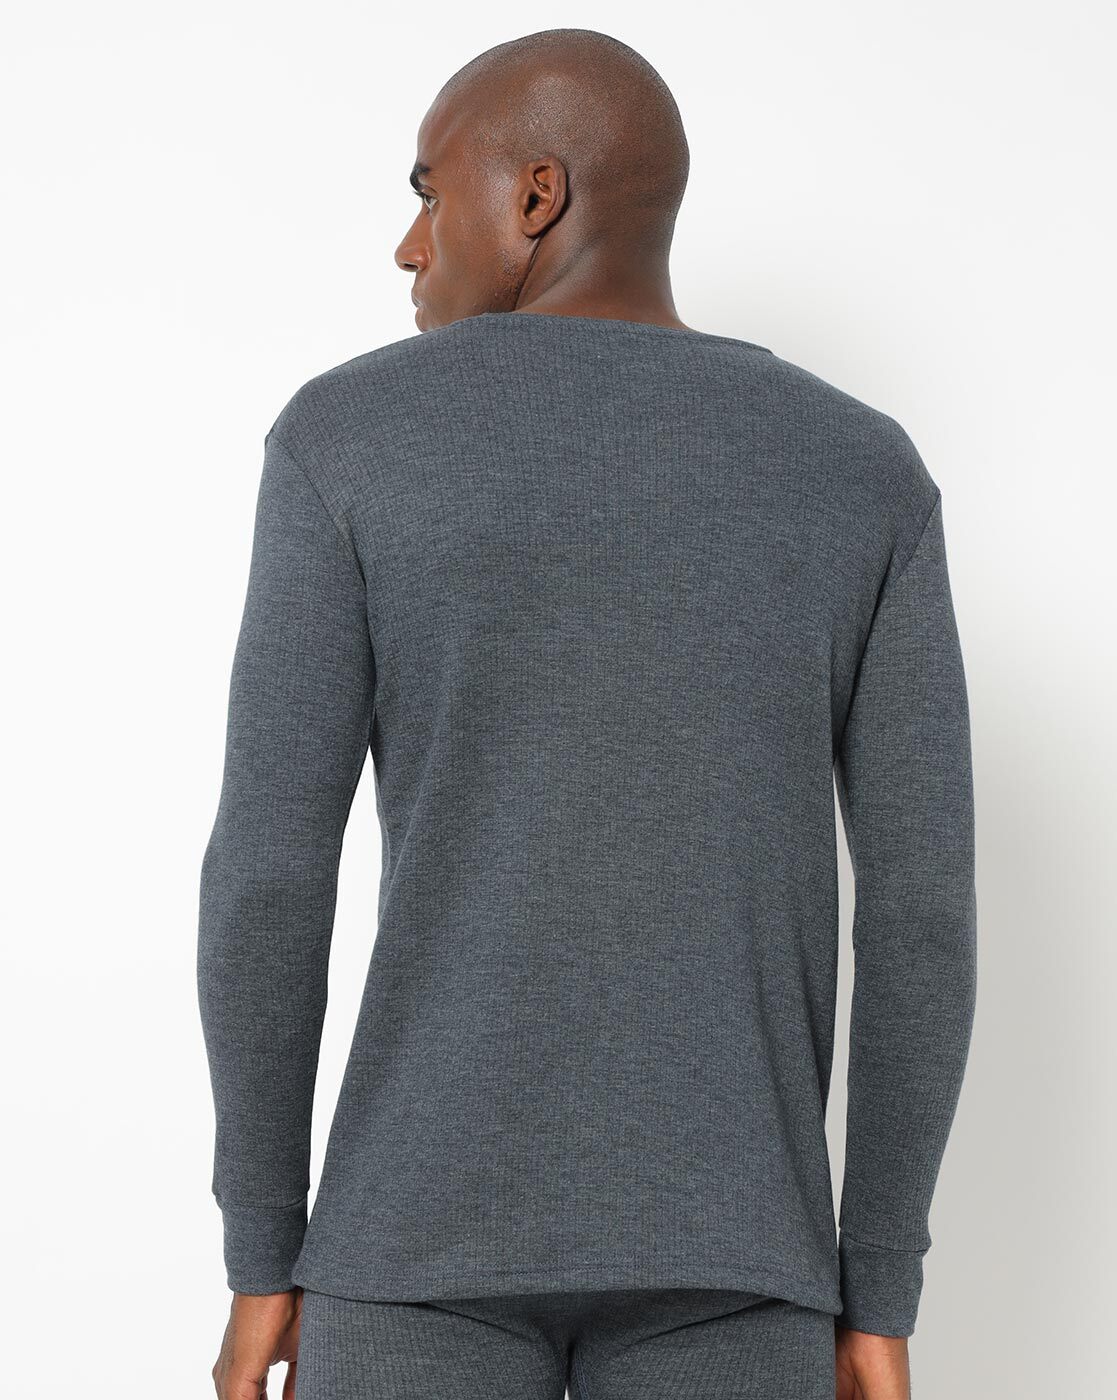 Buy Grey Thermal Wear for Men by Urban Hug Online